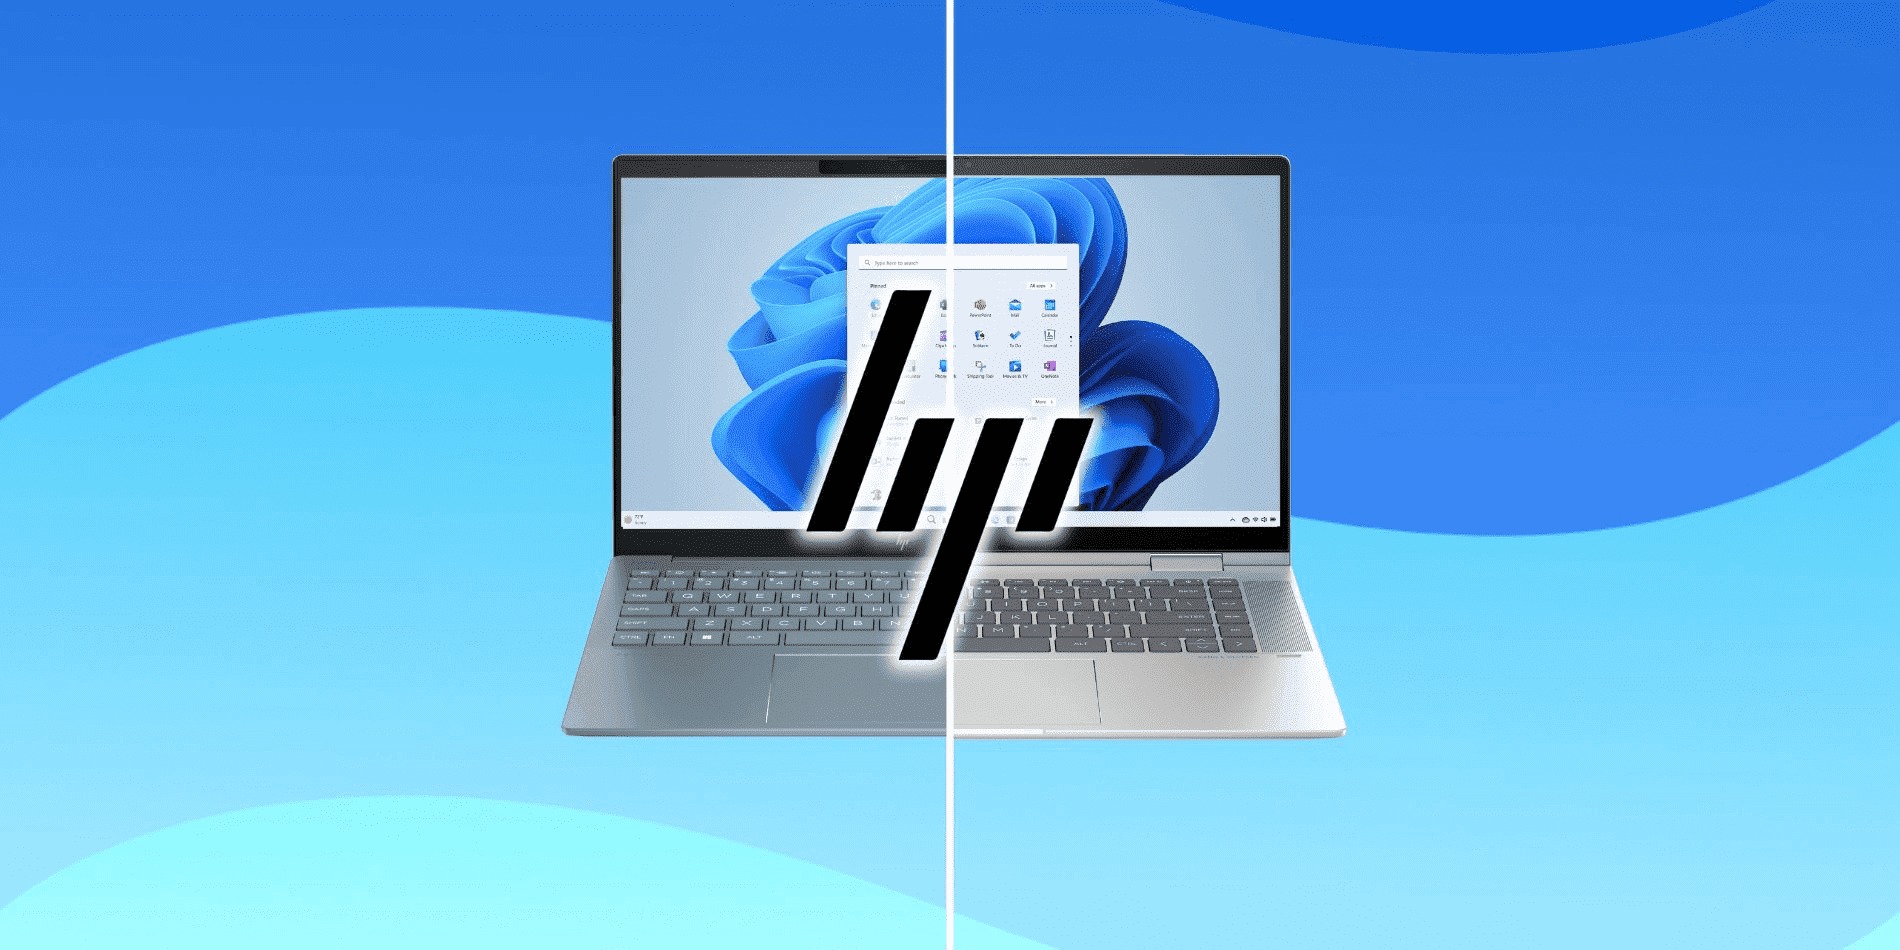 HP mematikan merek Spectre, Envy, dan Pavilion, dan sebagai gantinya memperkenalkan laptop OmniBook dan EliteBooks baru